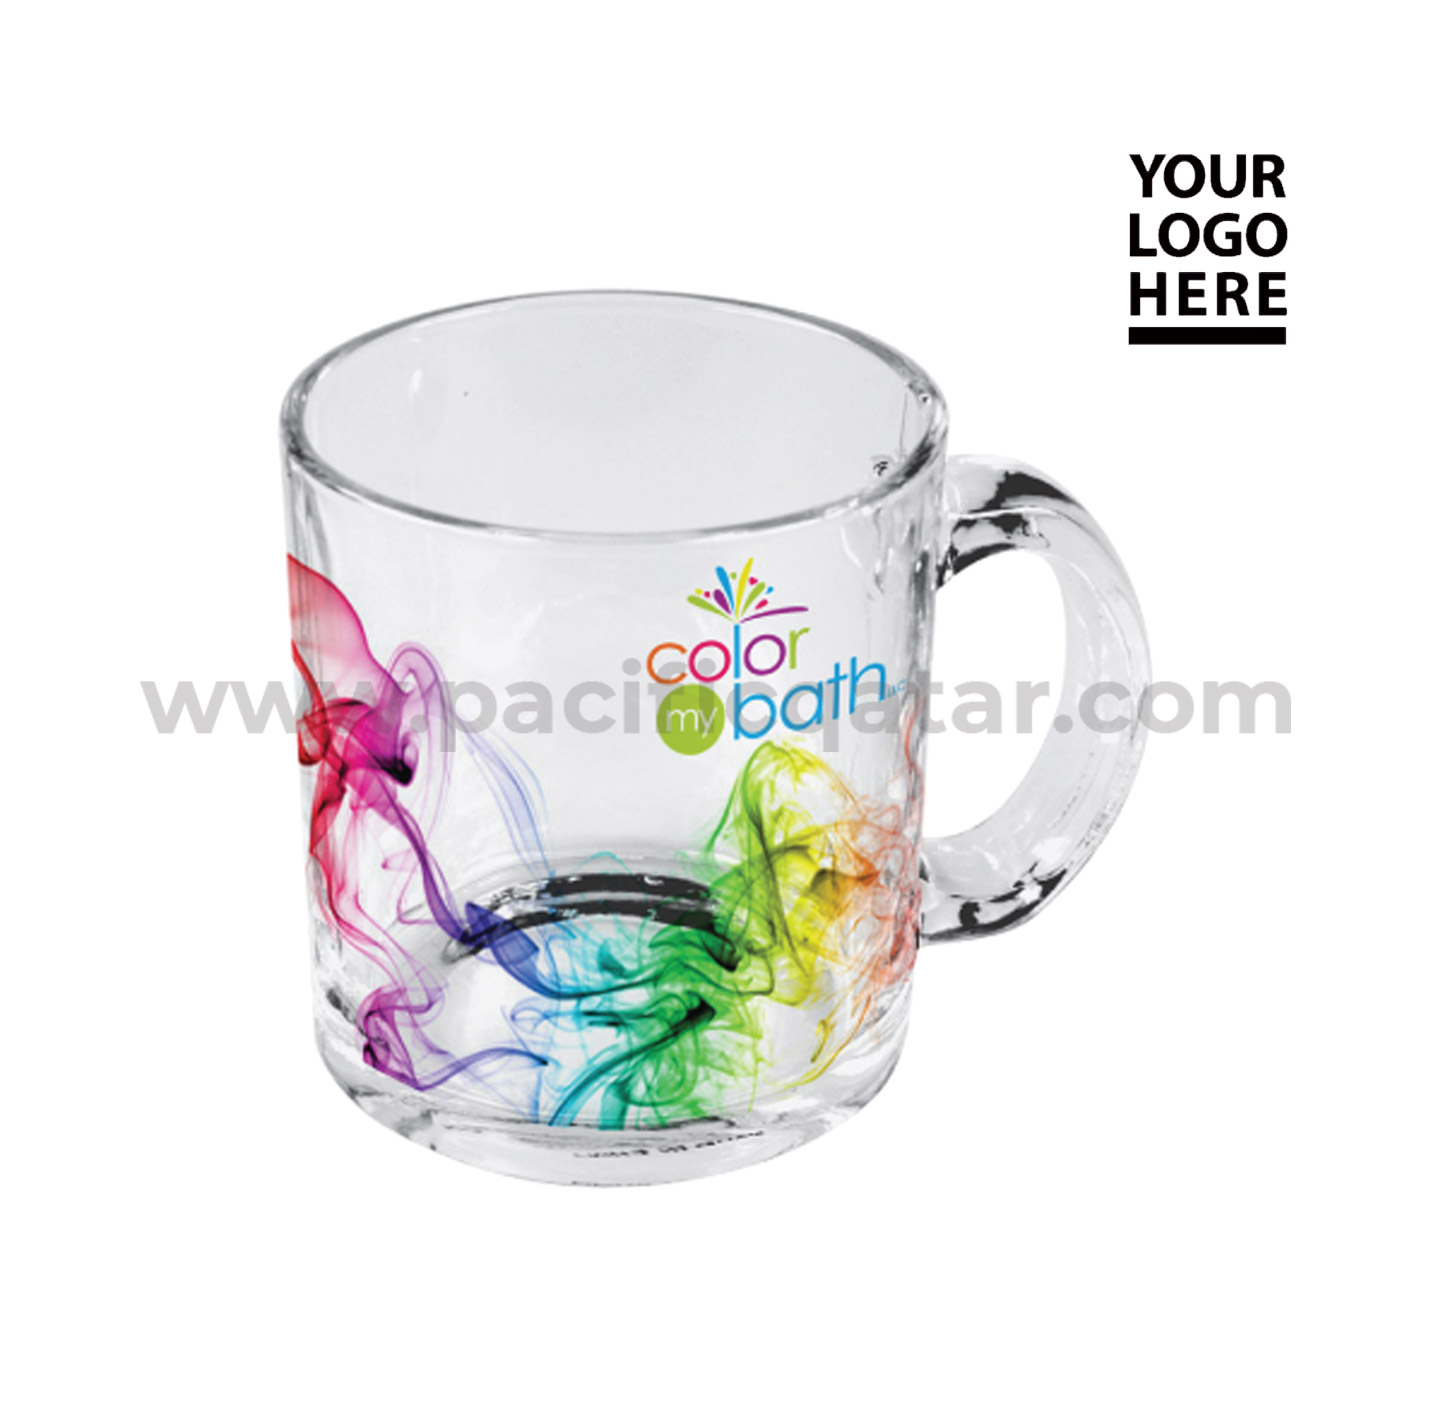 sublimation glass mug with logo